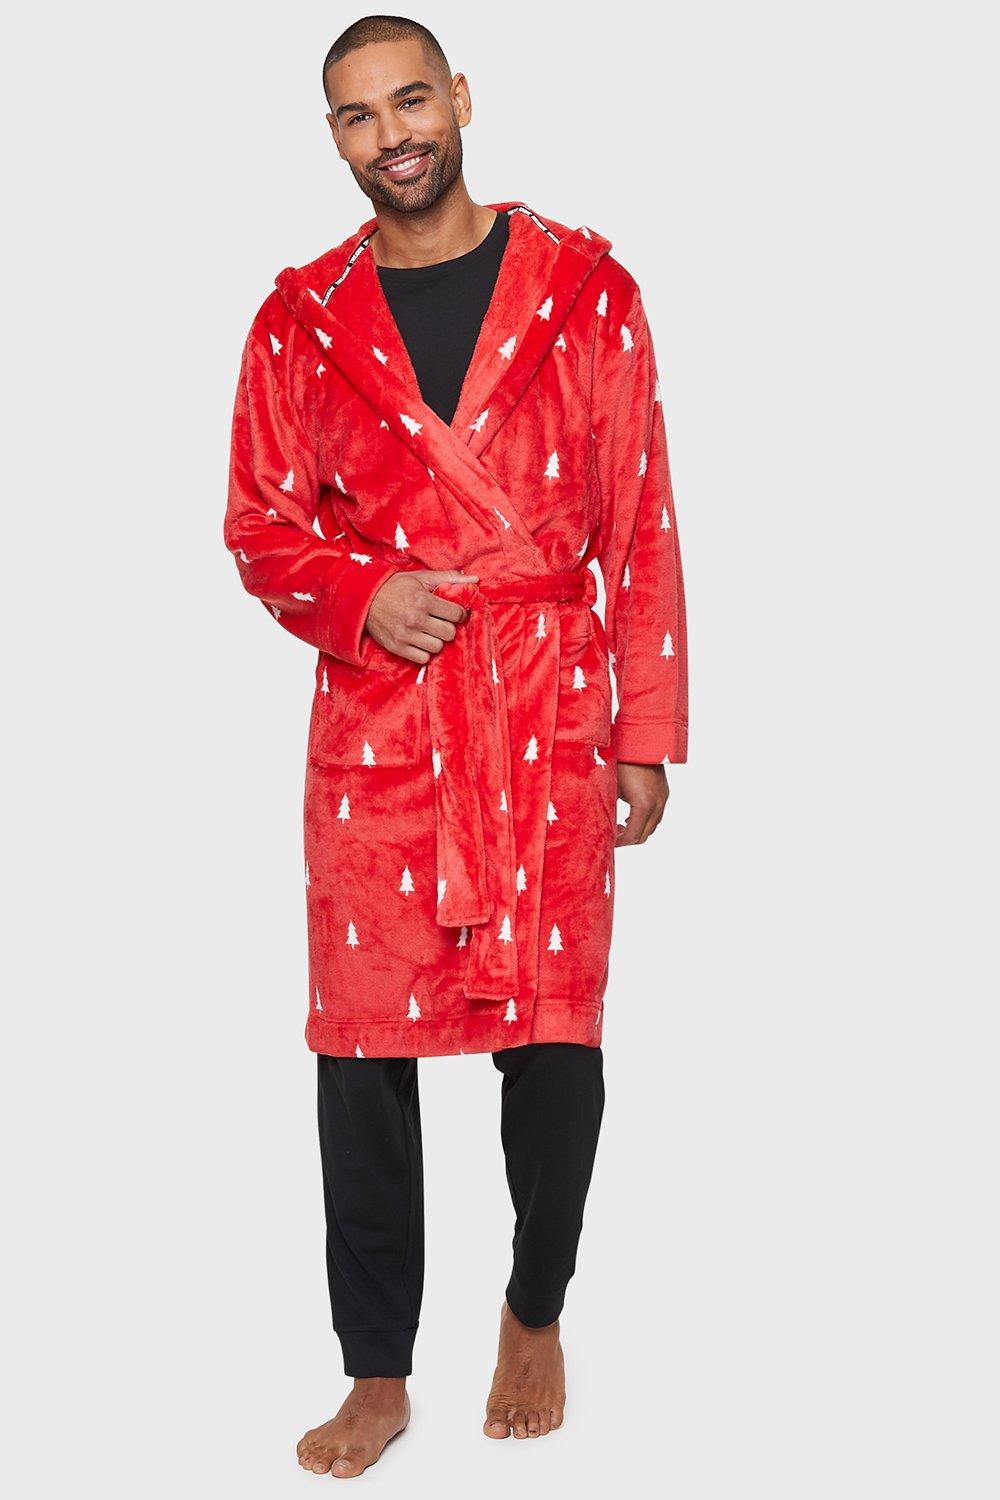 Mens Coral Fleece Robe Soft Warm Shawl Collar Wrap Dressing Gown Nightwear  | eBay